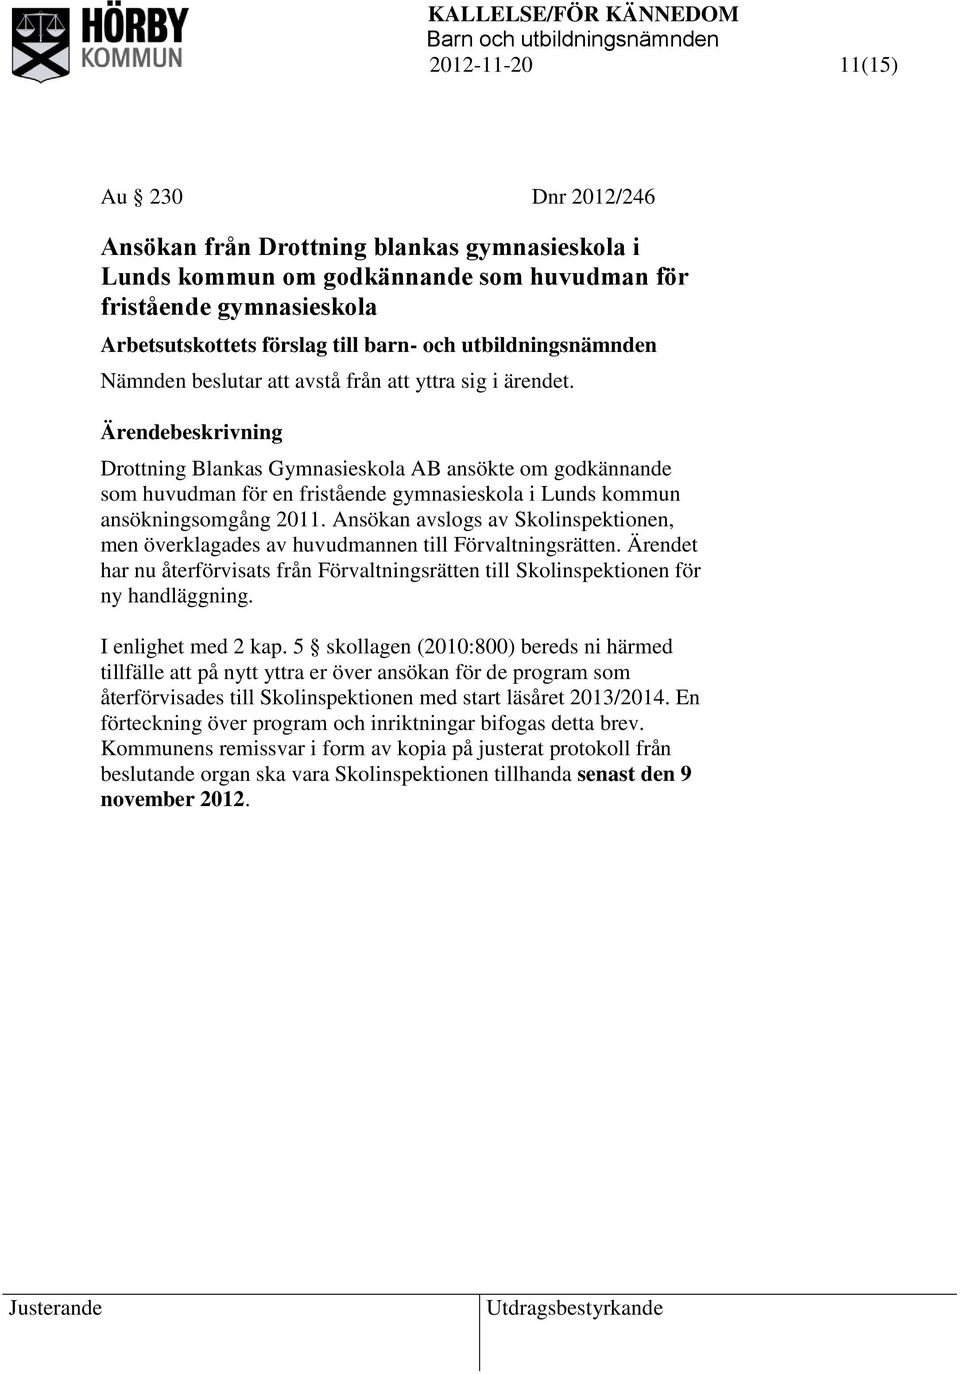 Drottning Blankas Gymnasieskola AB ansökte om godkännande som huvudman för en fristående gymnasieskola i Lunds kommun ansökningsomgång 2011.